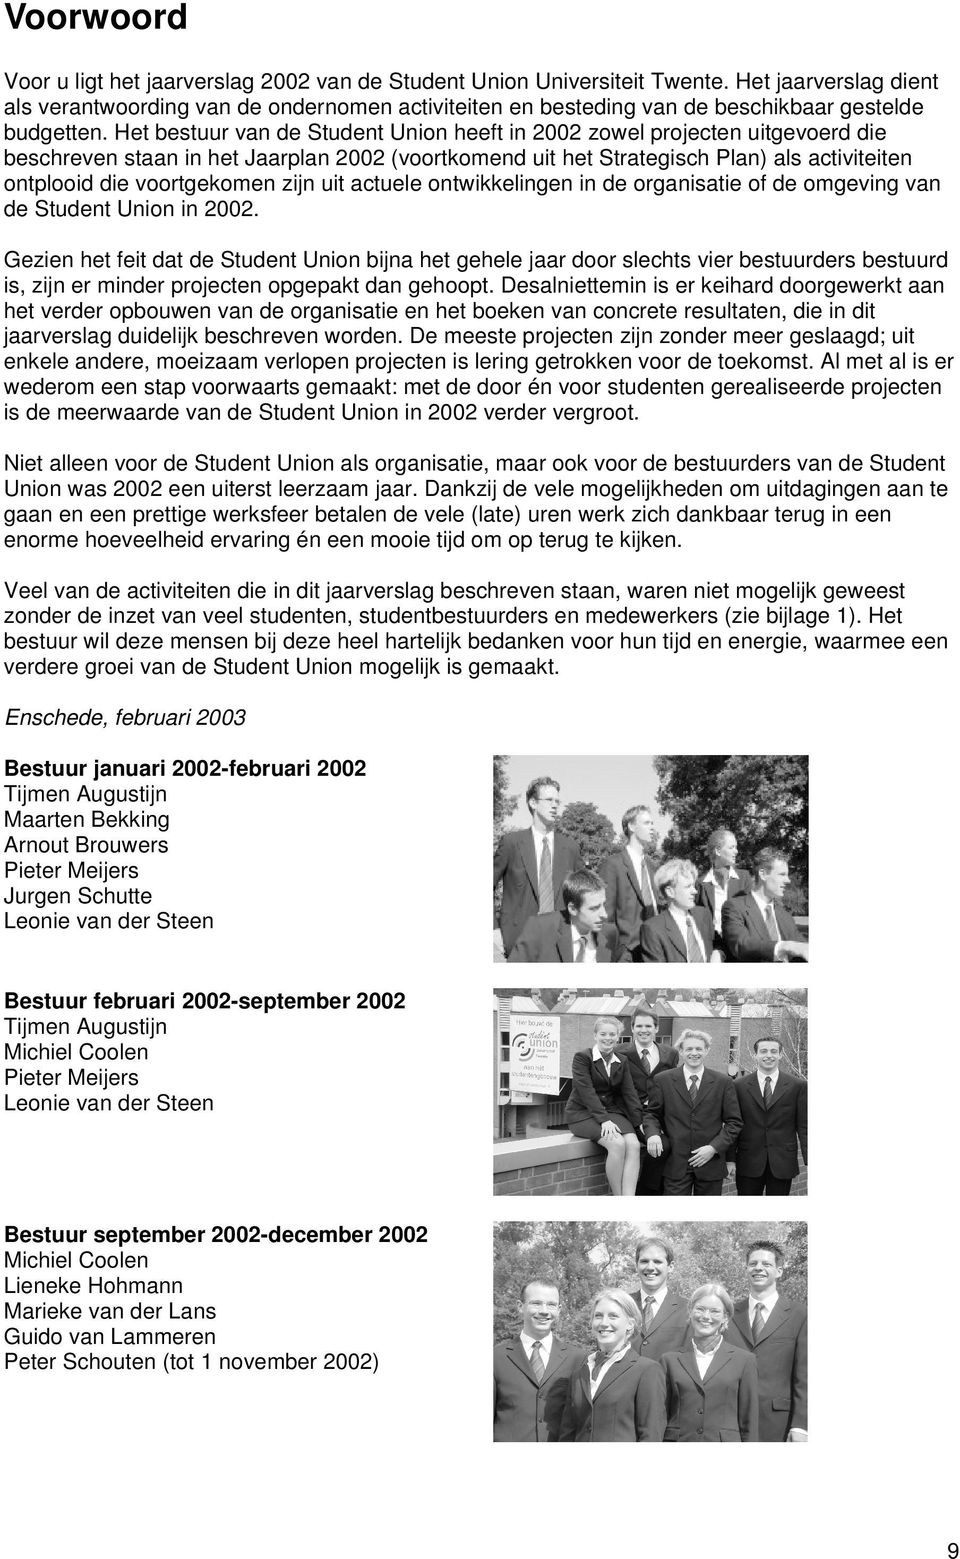 Het bestuur van de Student Union heeft in 2002 zowel projecten uitgevoerd die beschreven staan in het Jaarplan 2002 (voortkomend uit het Strategisch Plan) als activiteiten ontplooid die voortgekomen